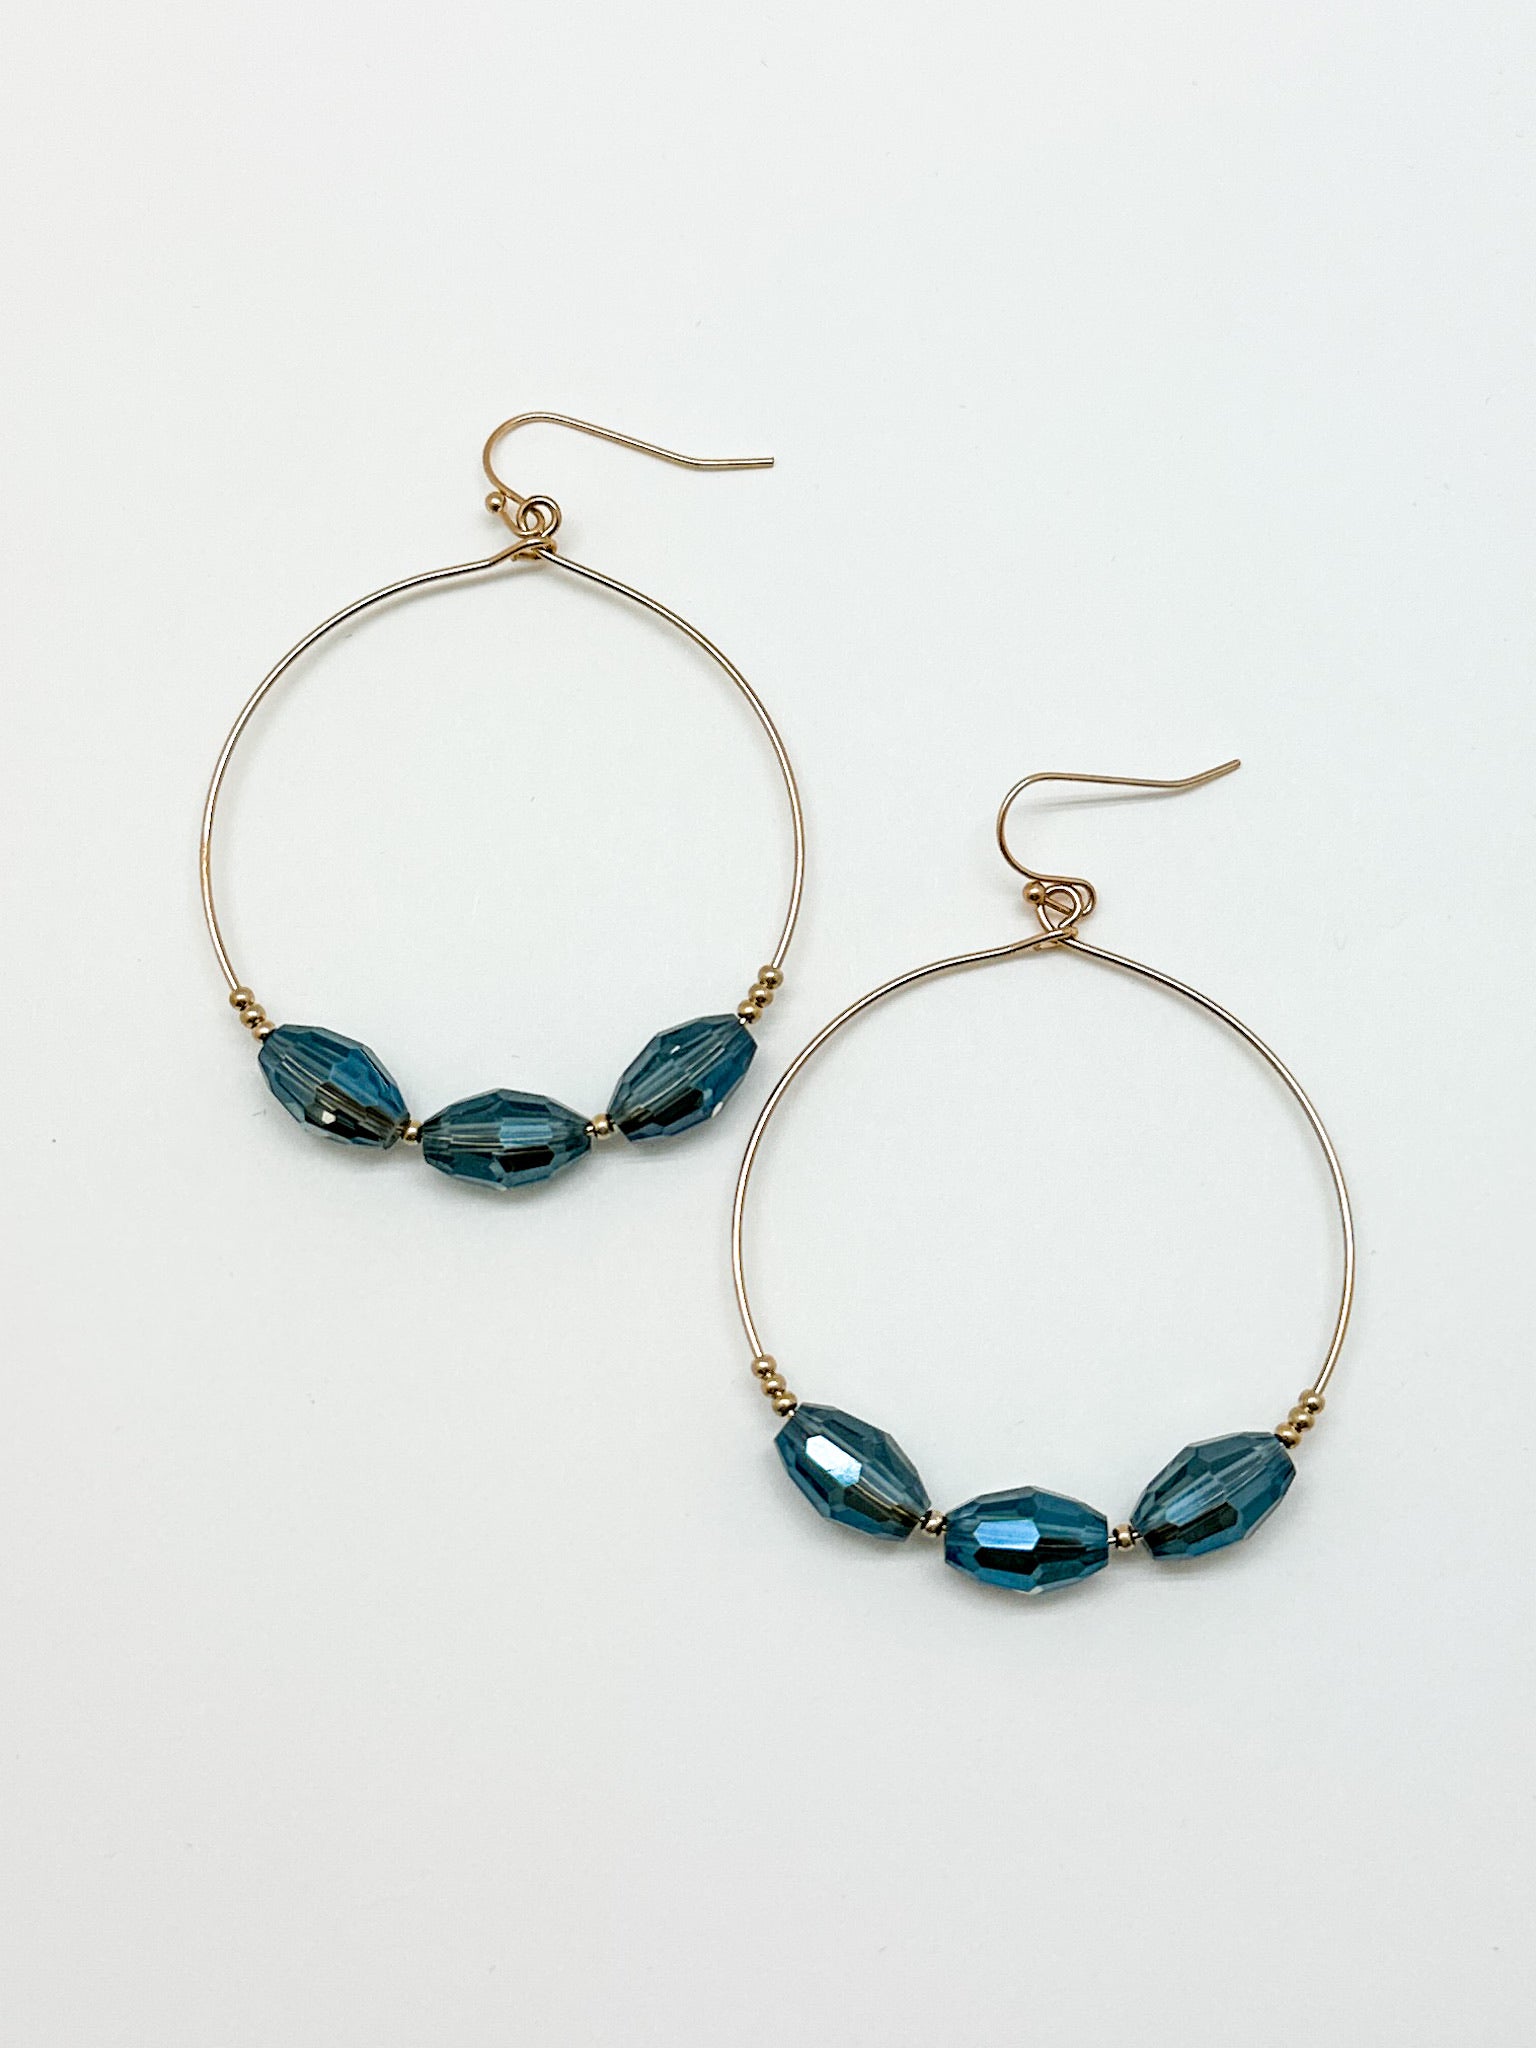 3 Blue Beaded Hoop Earrings. Gold hoop earrings with blue beads.